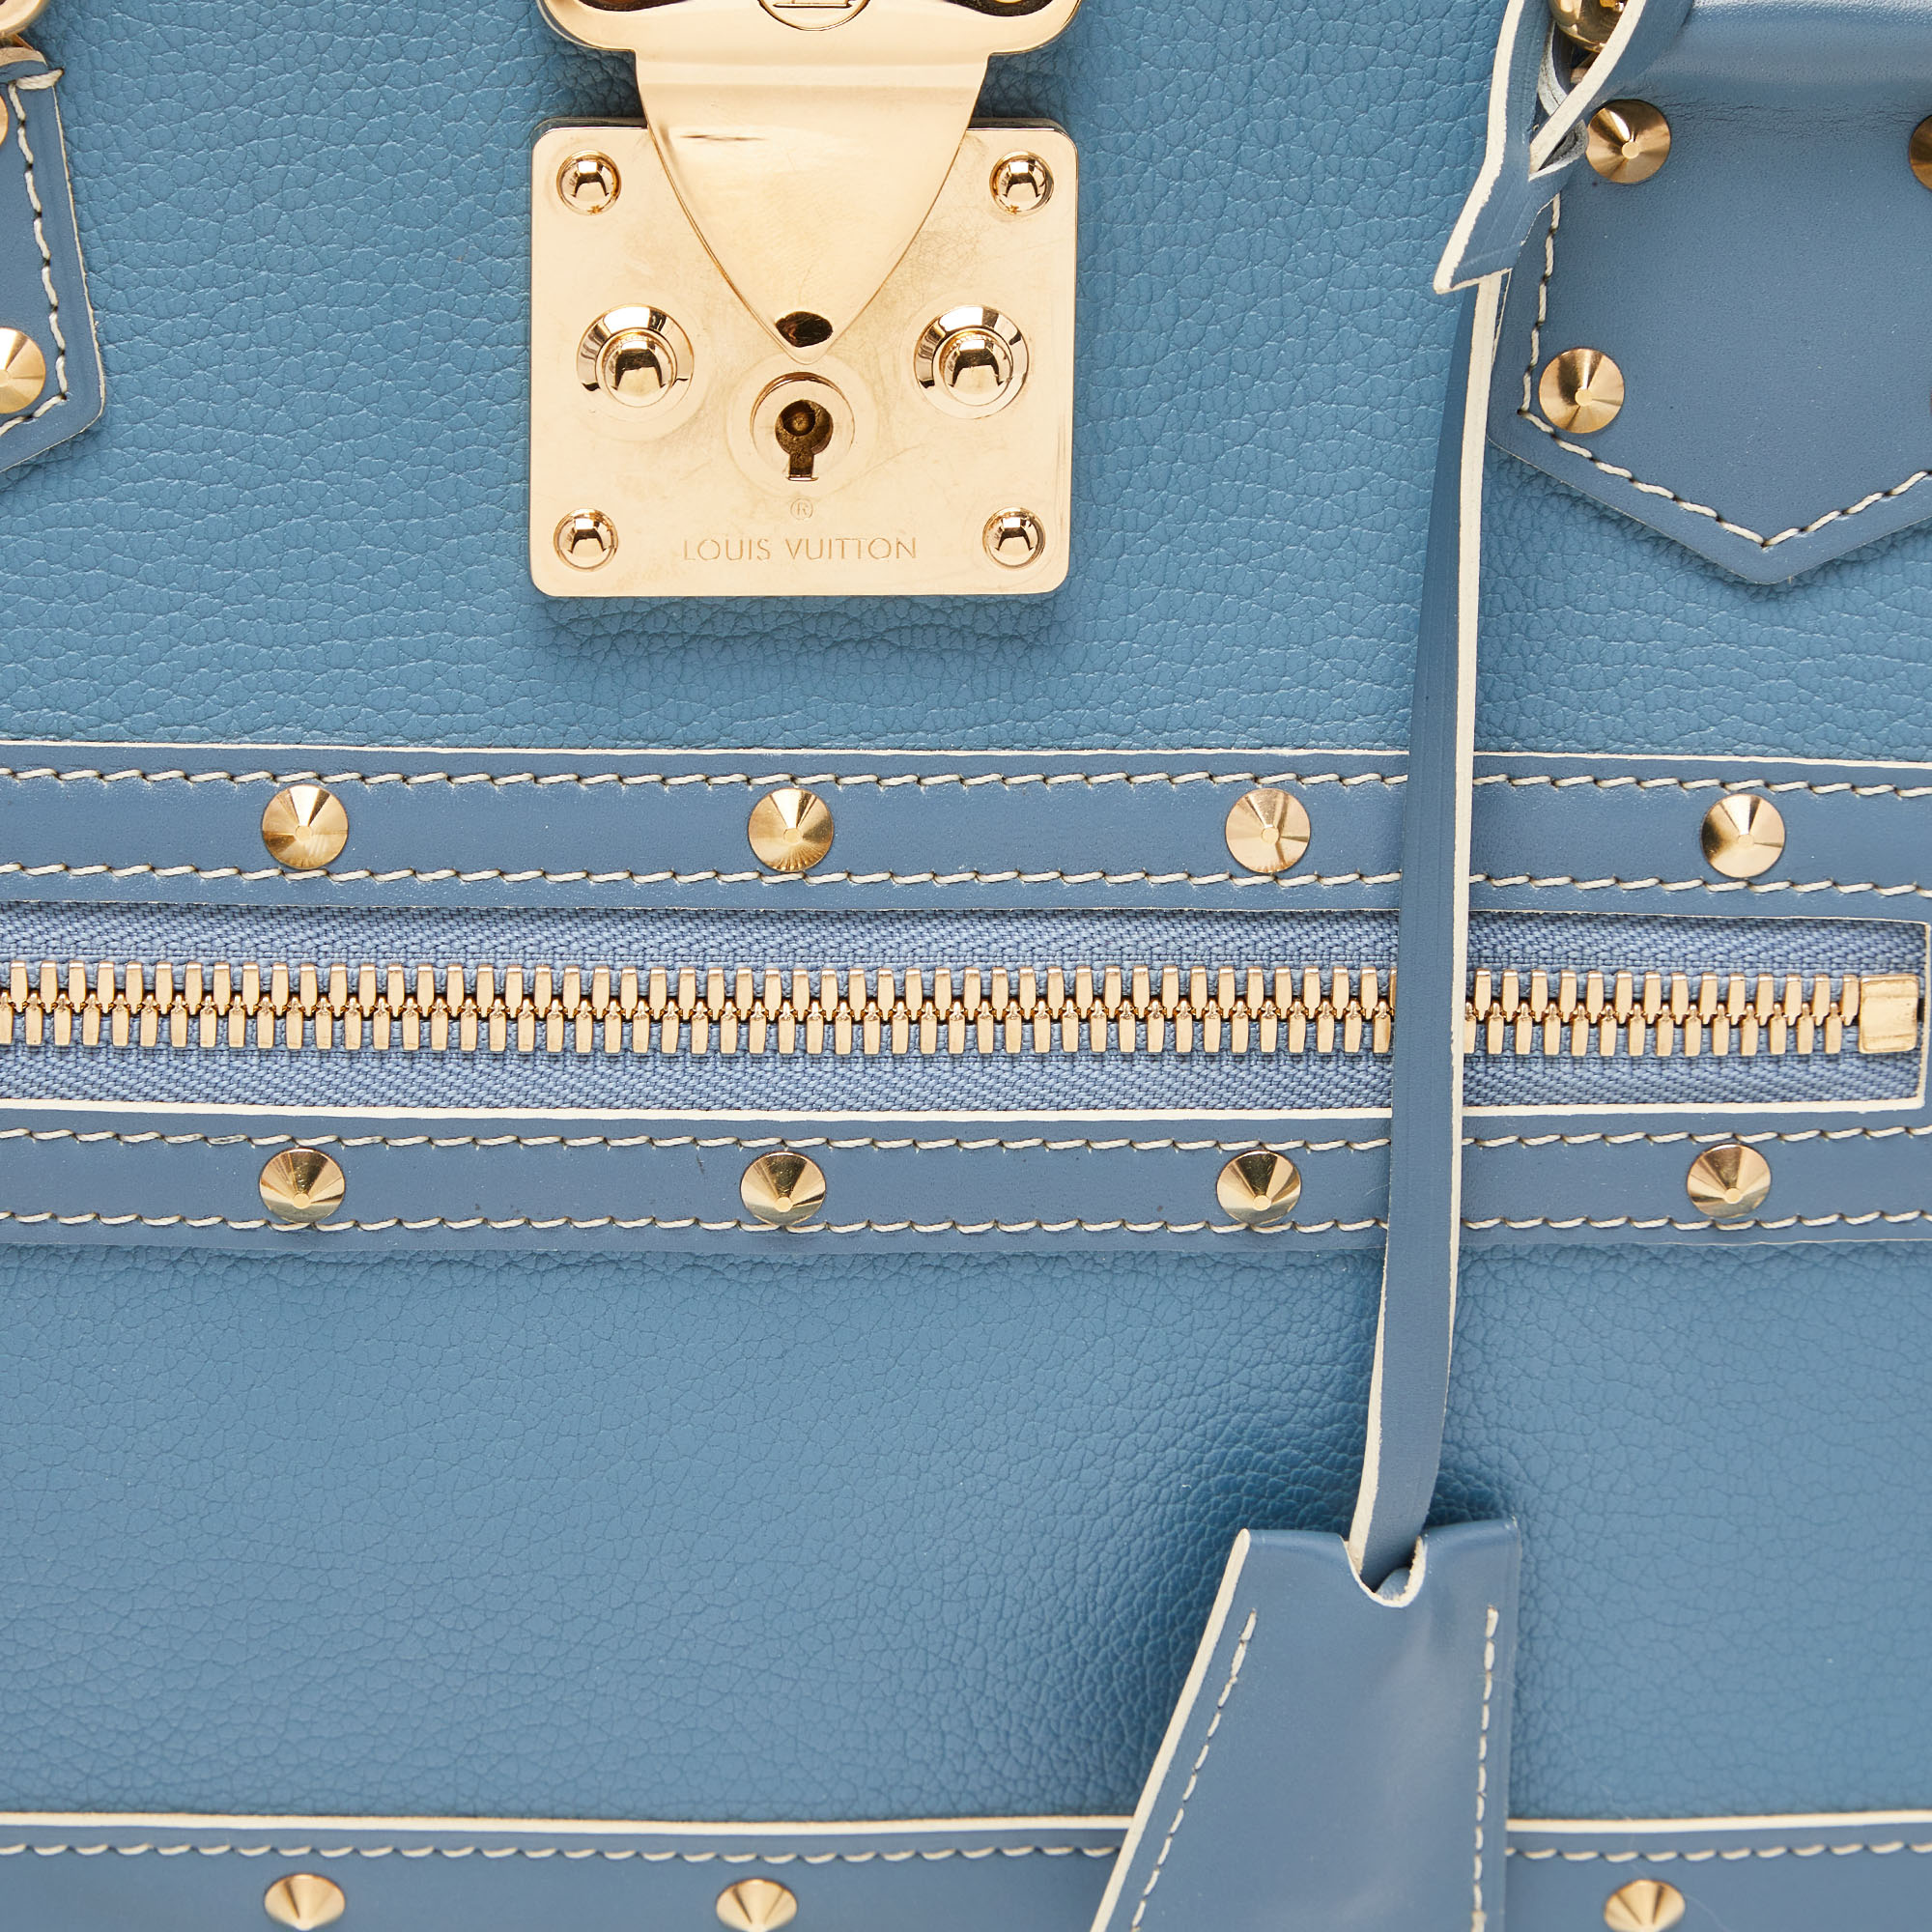 Louis Vuitton Blue Leather Suhali Le Fabuleux Bag